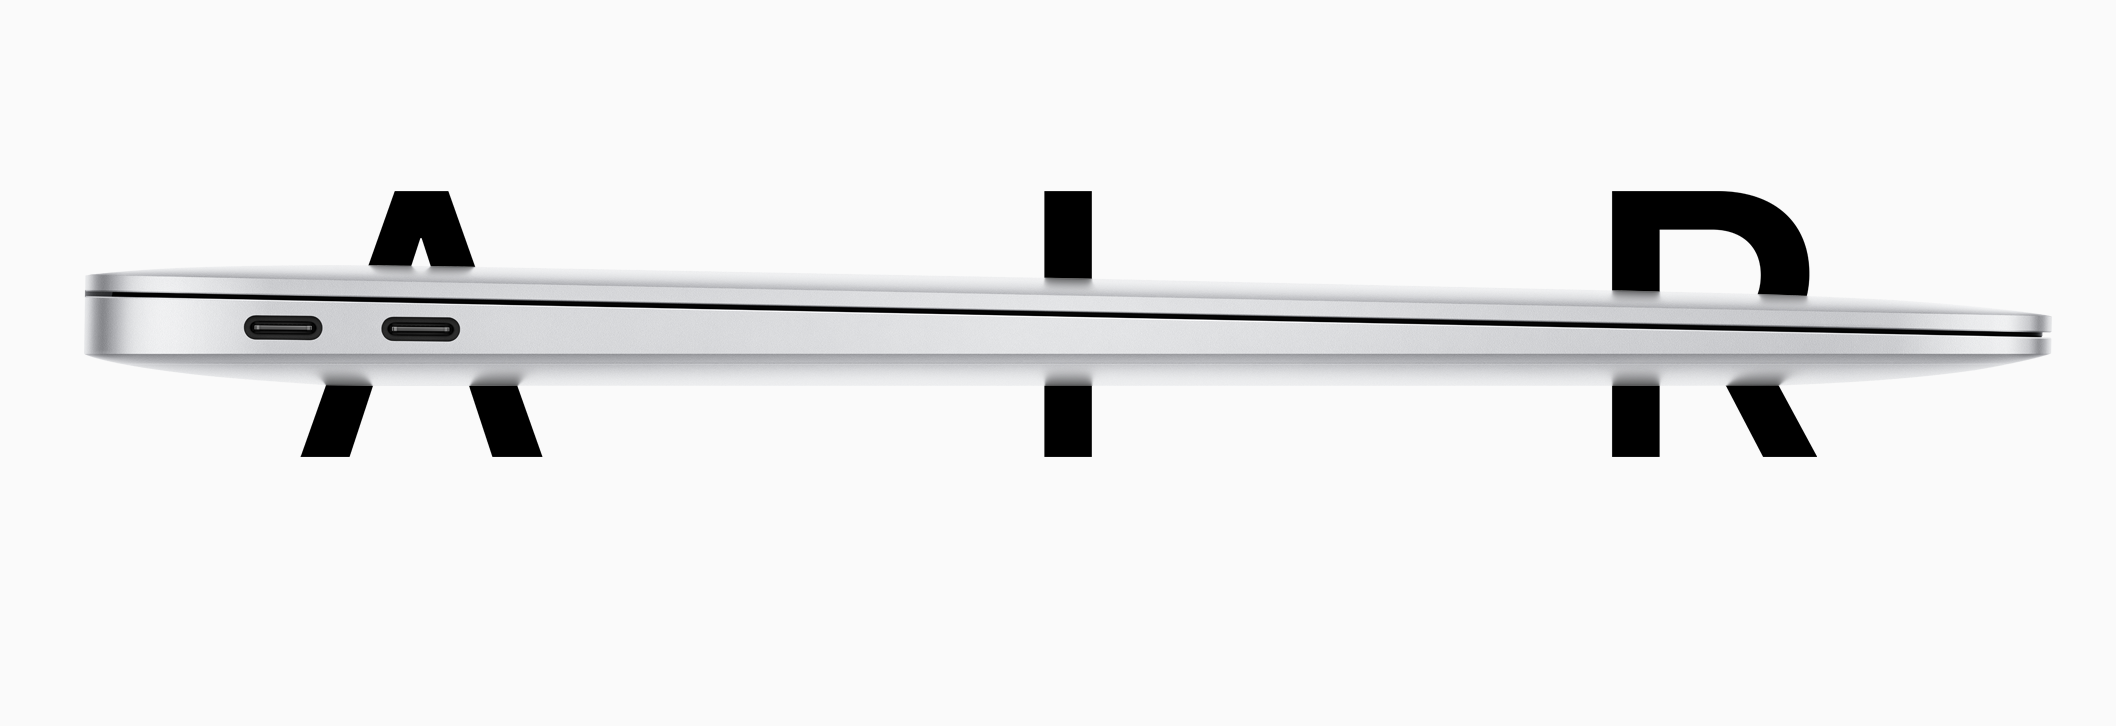 Apple je tiho najavio novi MacBook Air: bolji procesor, grafika, cijena i tipkovnica!